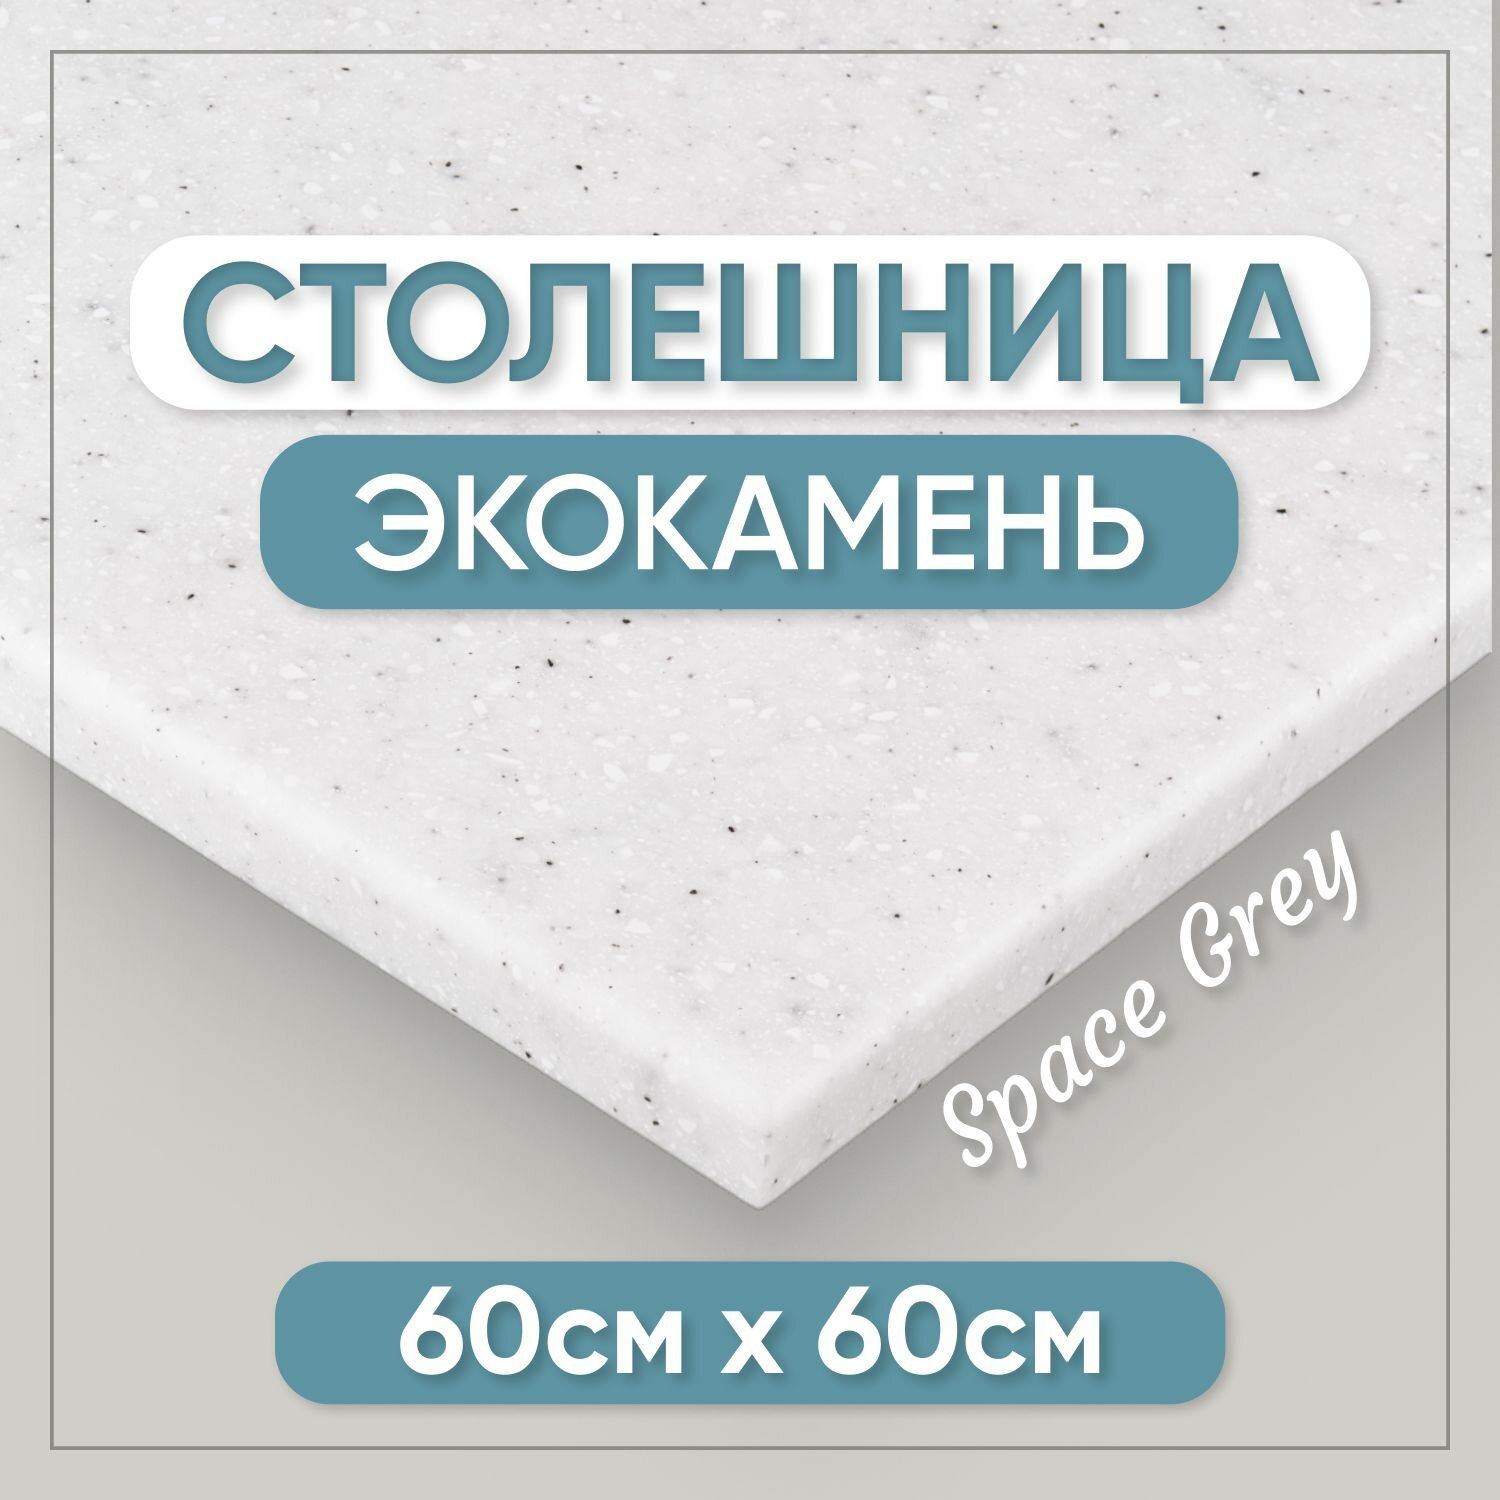 Столешница из искусственного камня 60см х 60см для кухни / ванны, серый цвет